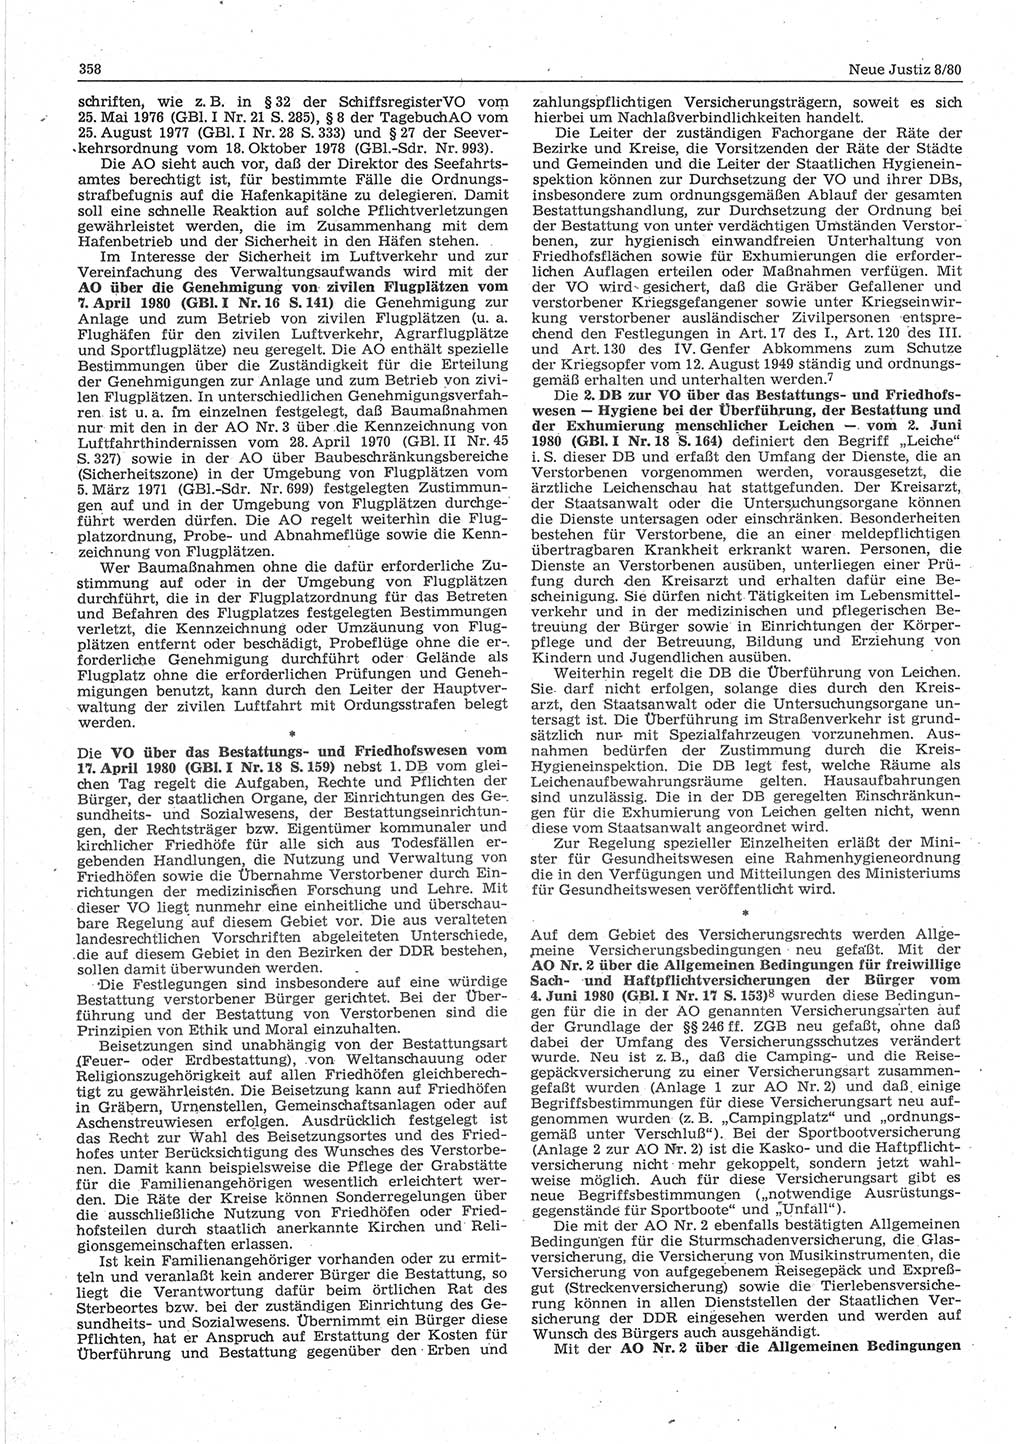 Neue Justiz (NJ), Zeitschrift für sozialistisches Recht und Gesetzlichkeit [Deutsche Demokratische Republik (DDR)], 34. Jahrgang 1980, Seite 358 (NJ DDR 1980, S. 358)